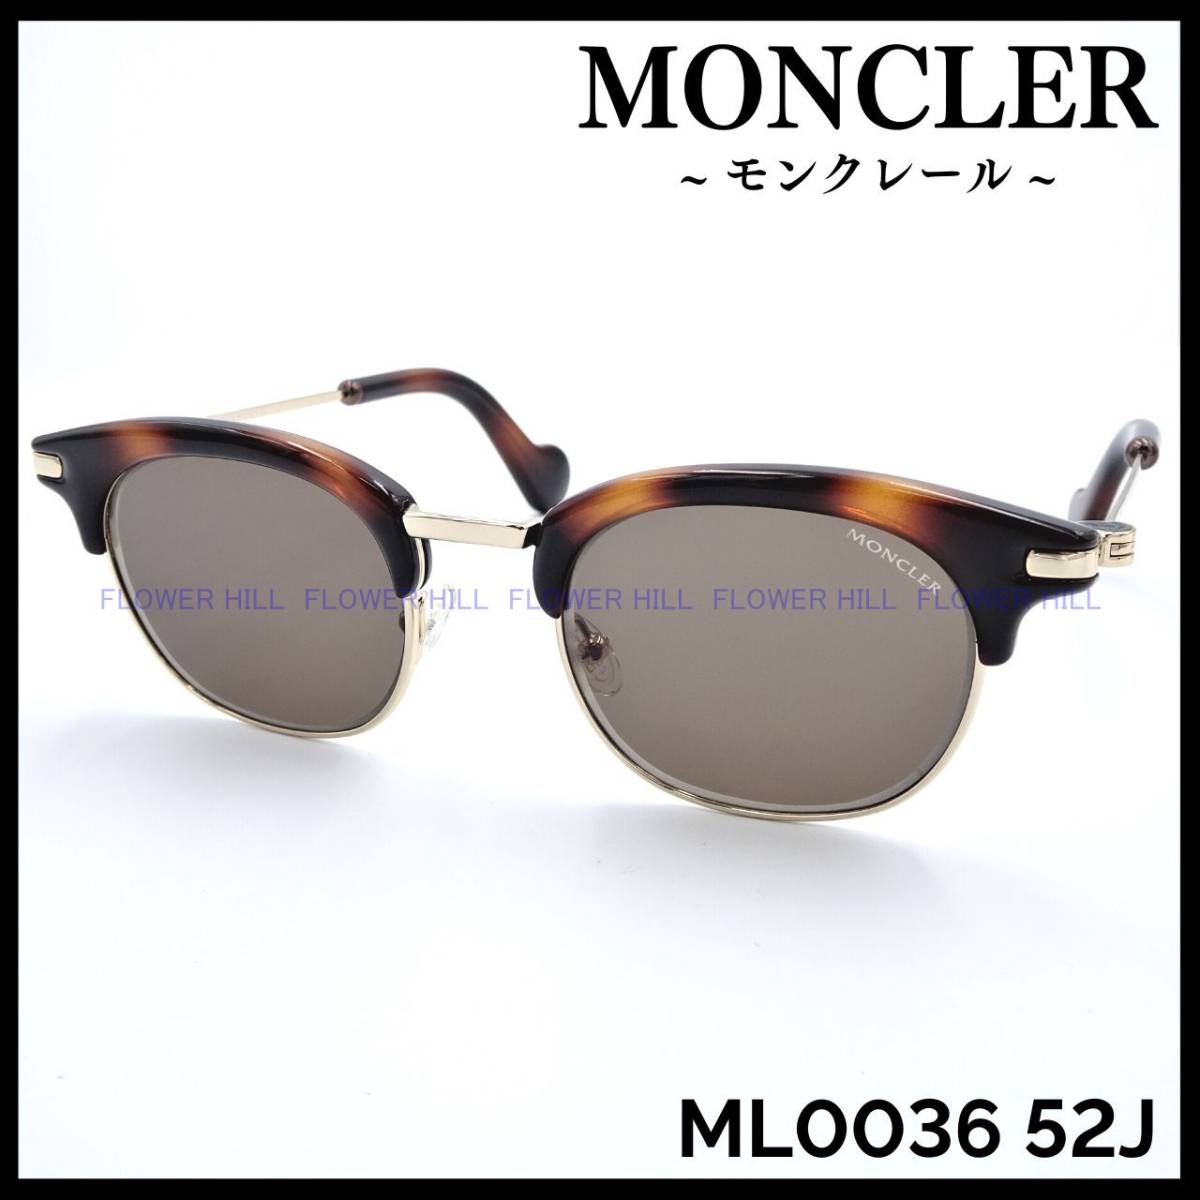 【新品・送料無料】モンクレール MONCLER ML0036 52J サングラス ハバナ/ゴールド イタリア製 メンズ レディース ブローシェイプ